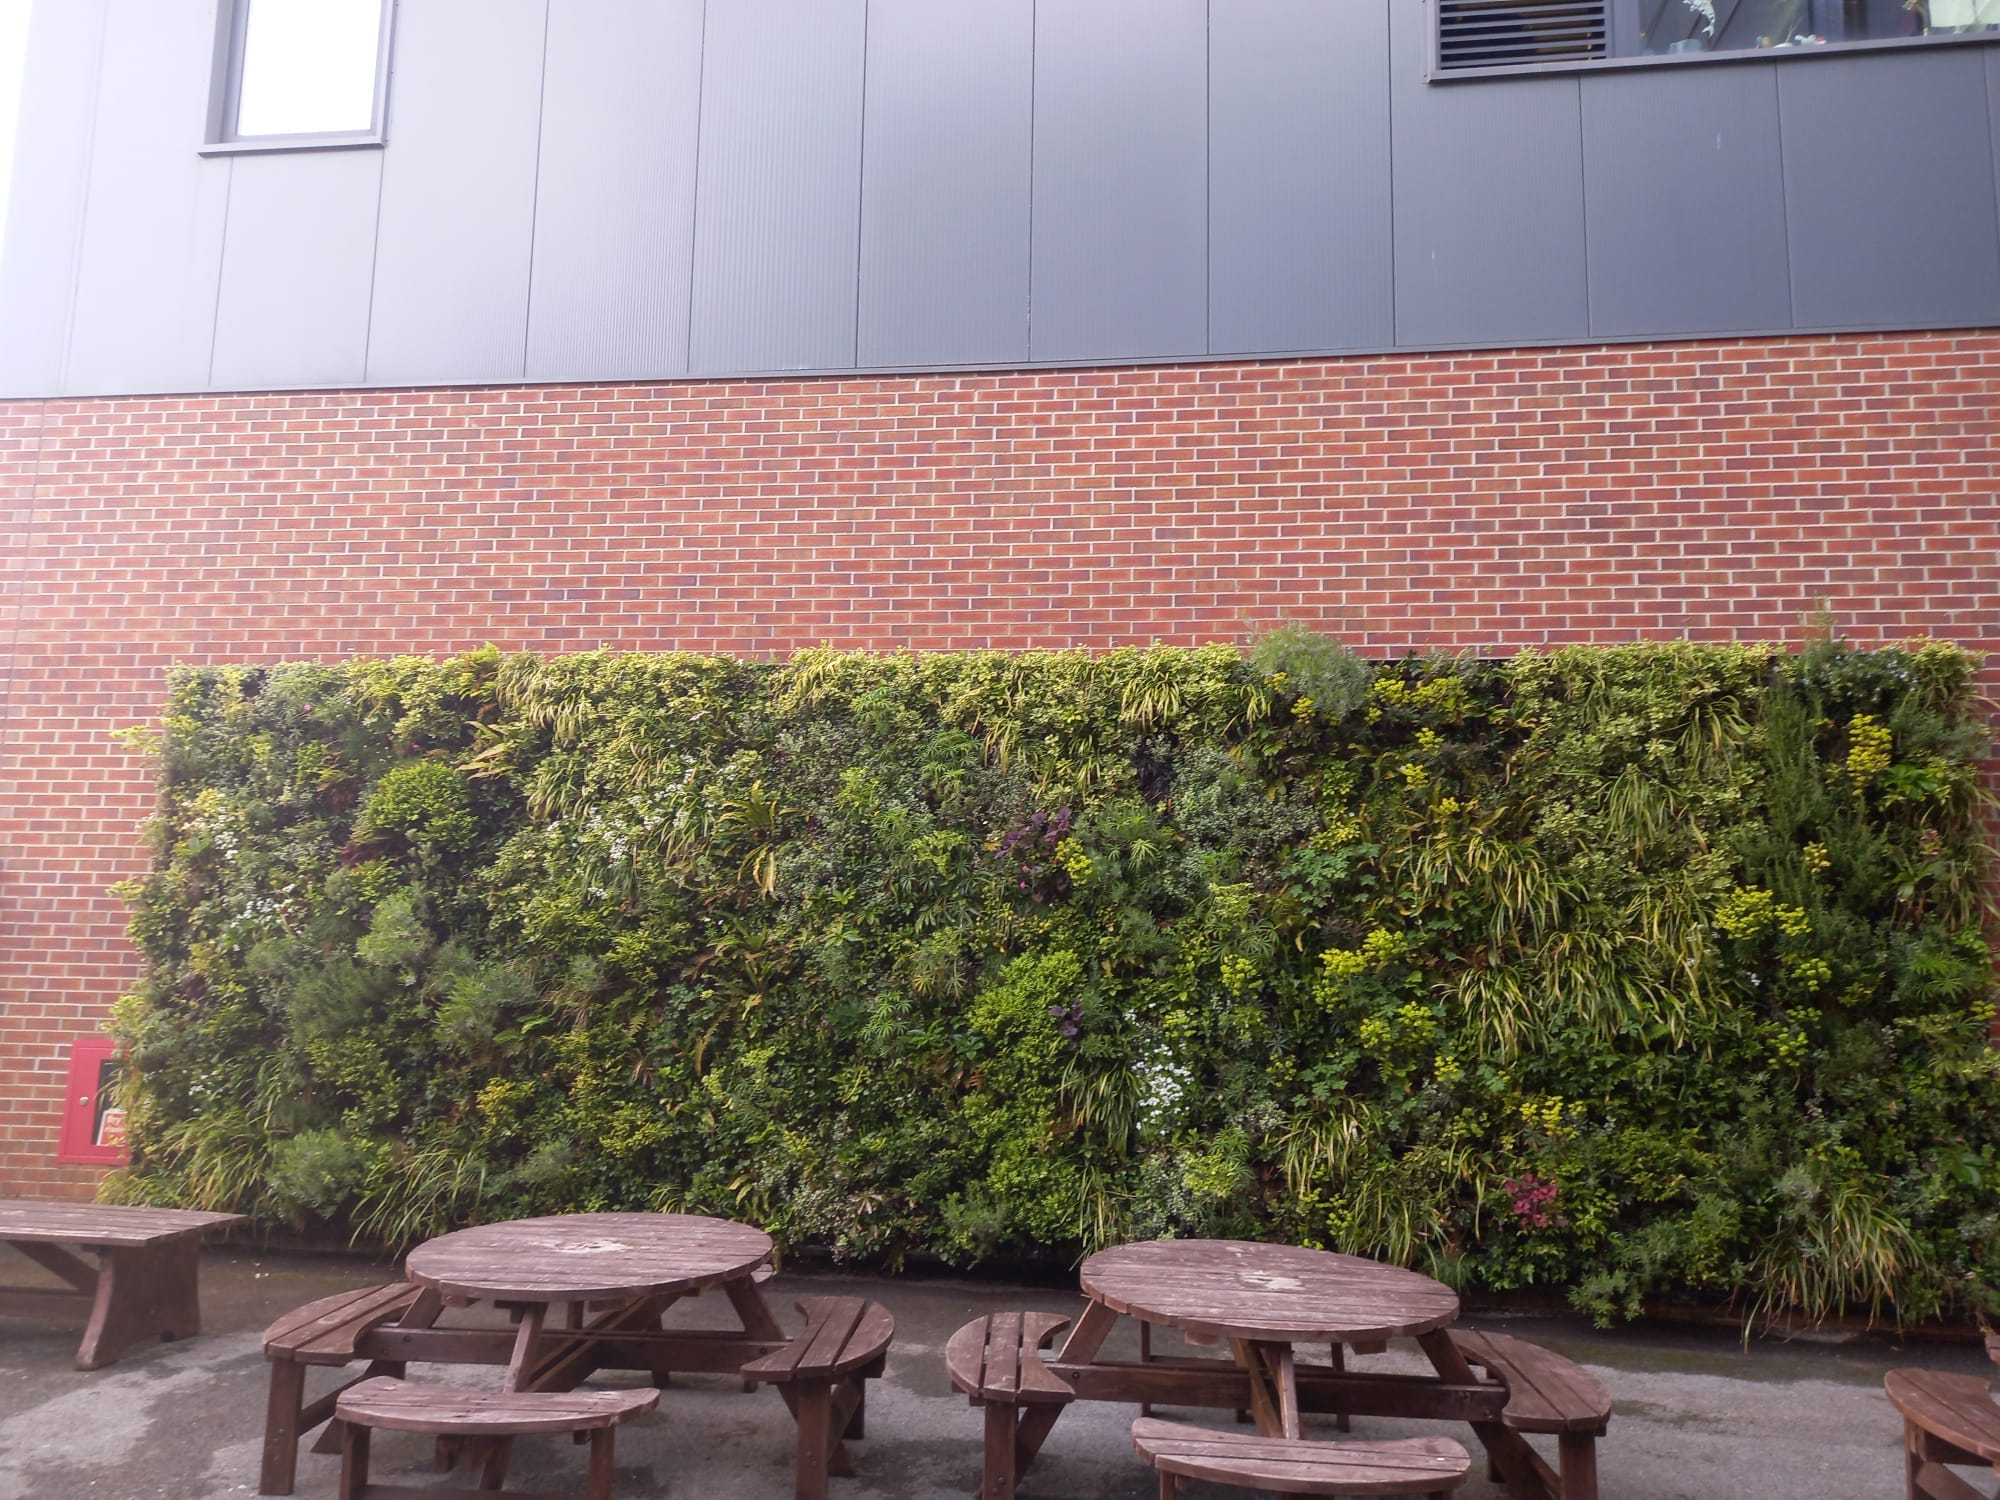 Living wall at University of Hull